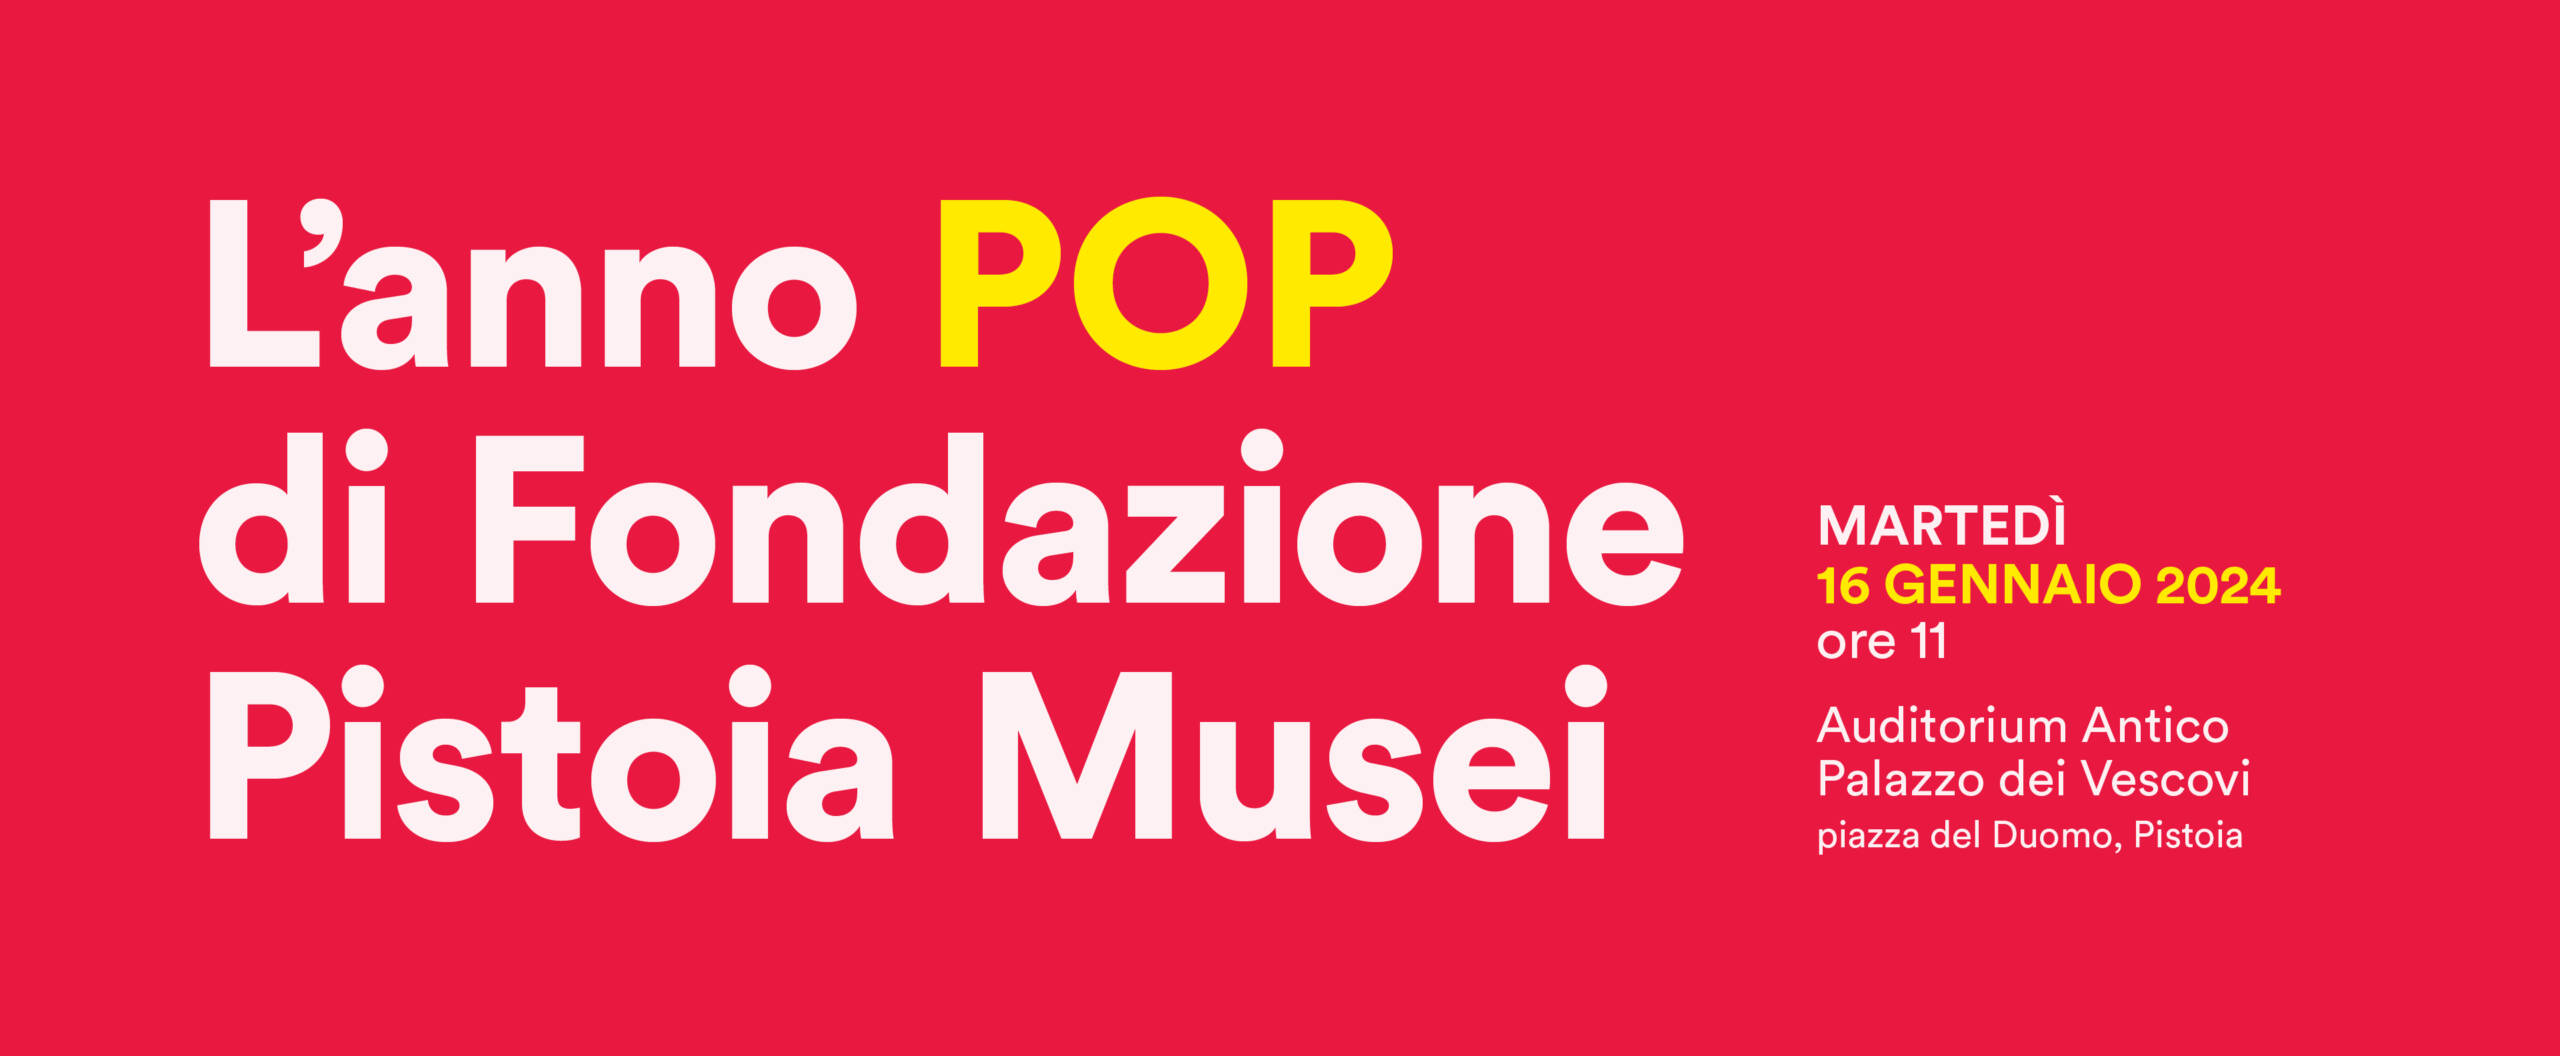 L'anno pop di Fondazione Pistoia Musei